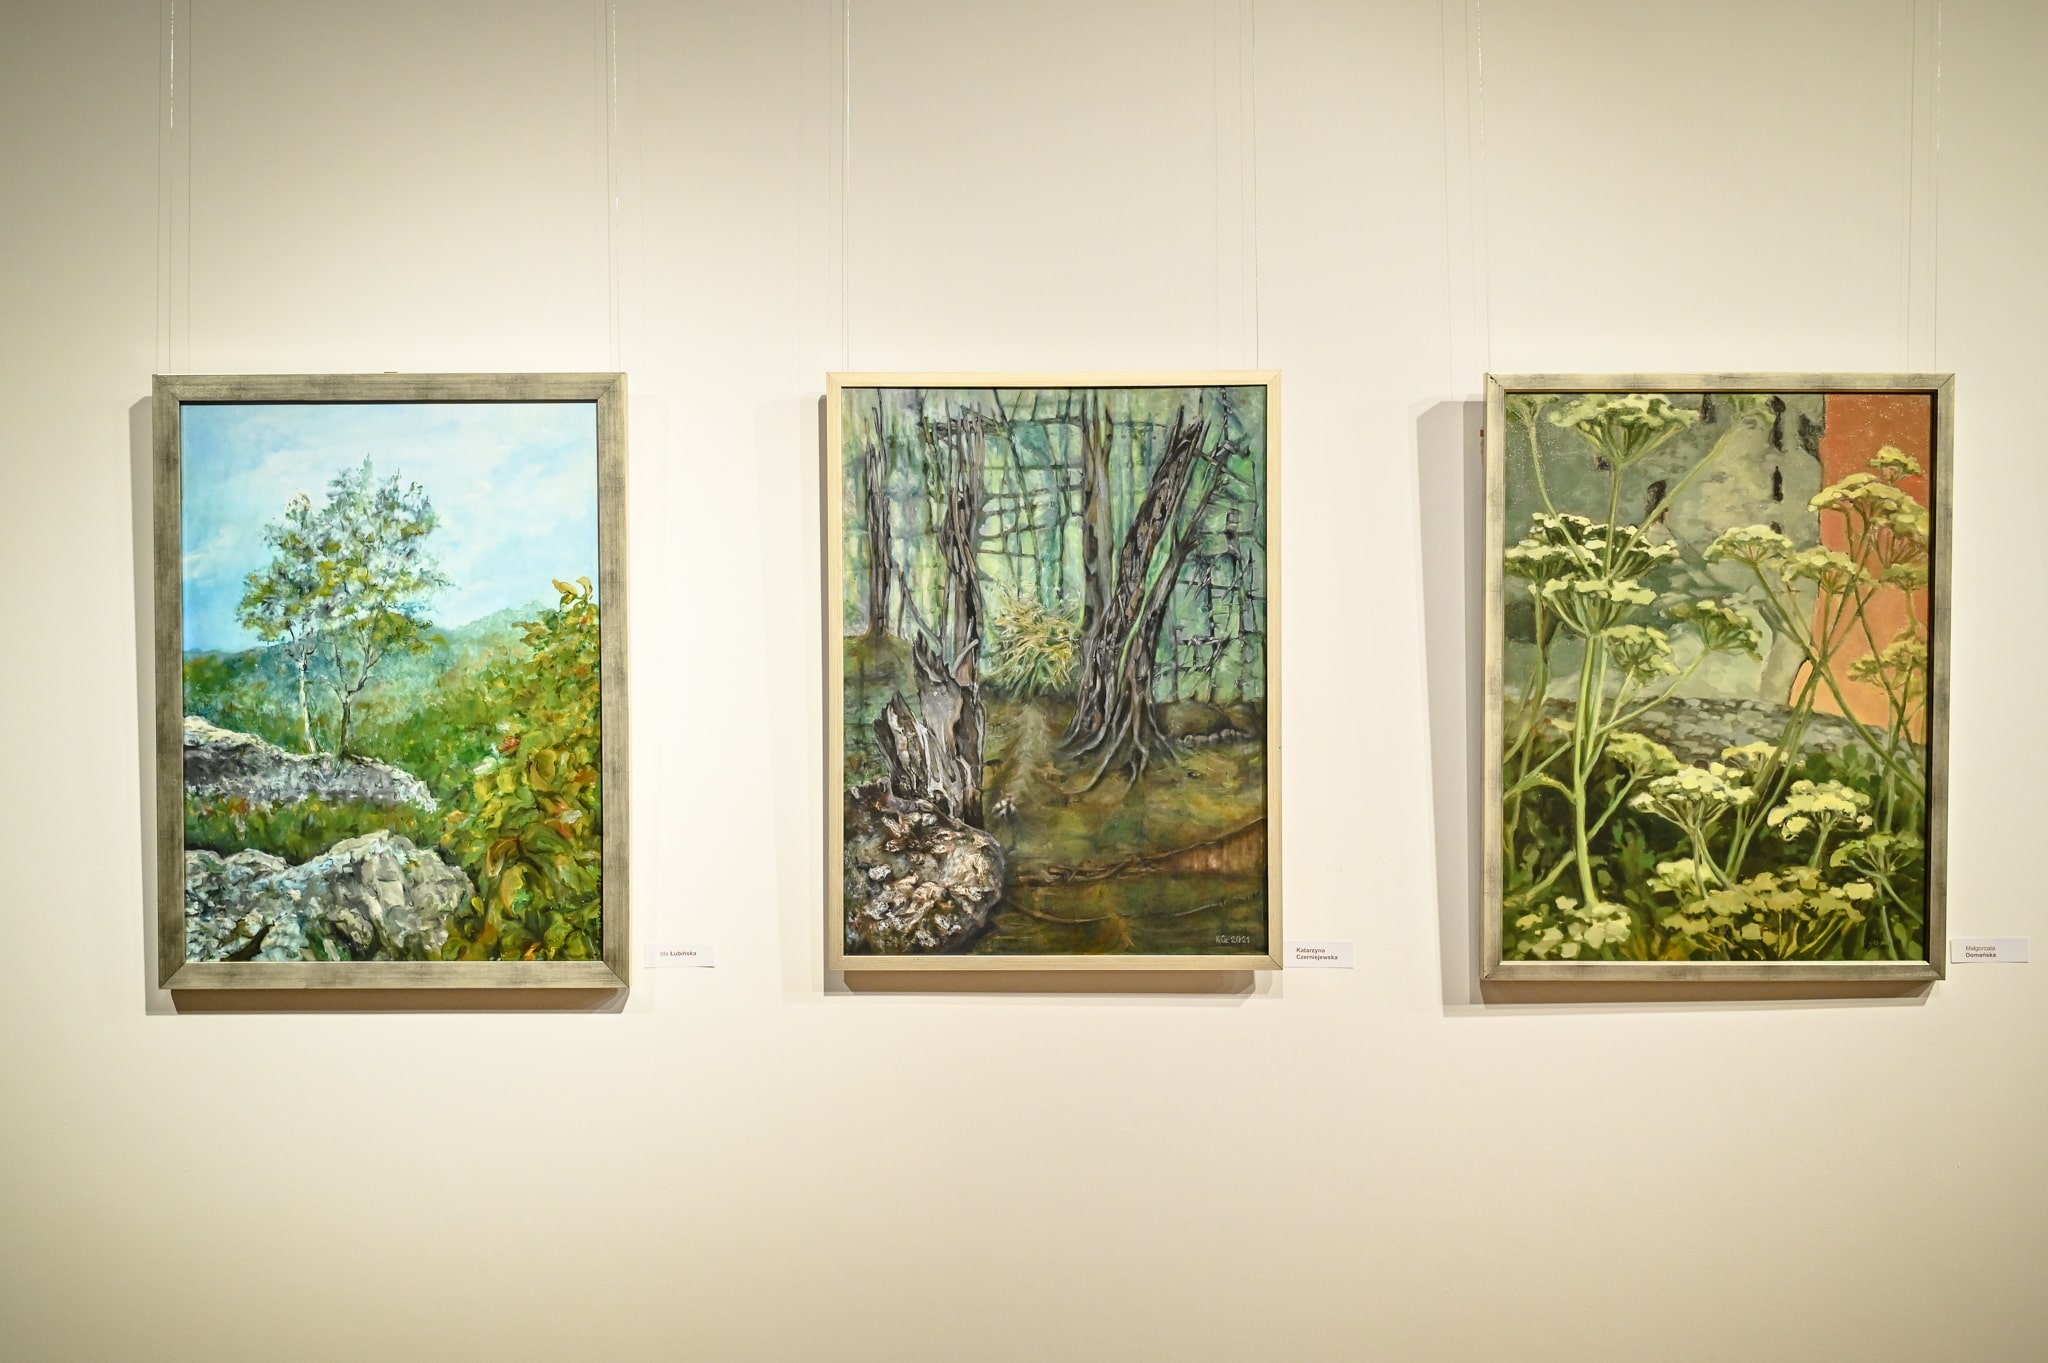 trzy obrazy malarstwie zawieszone na ścianie w galerii sztuki